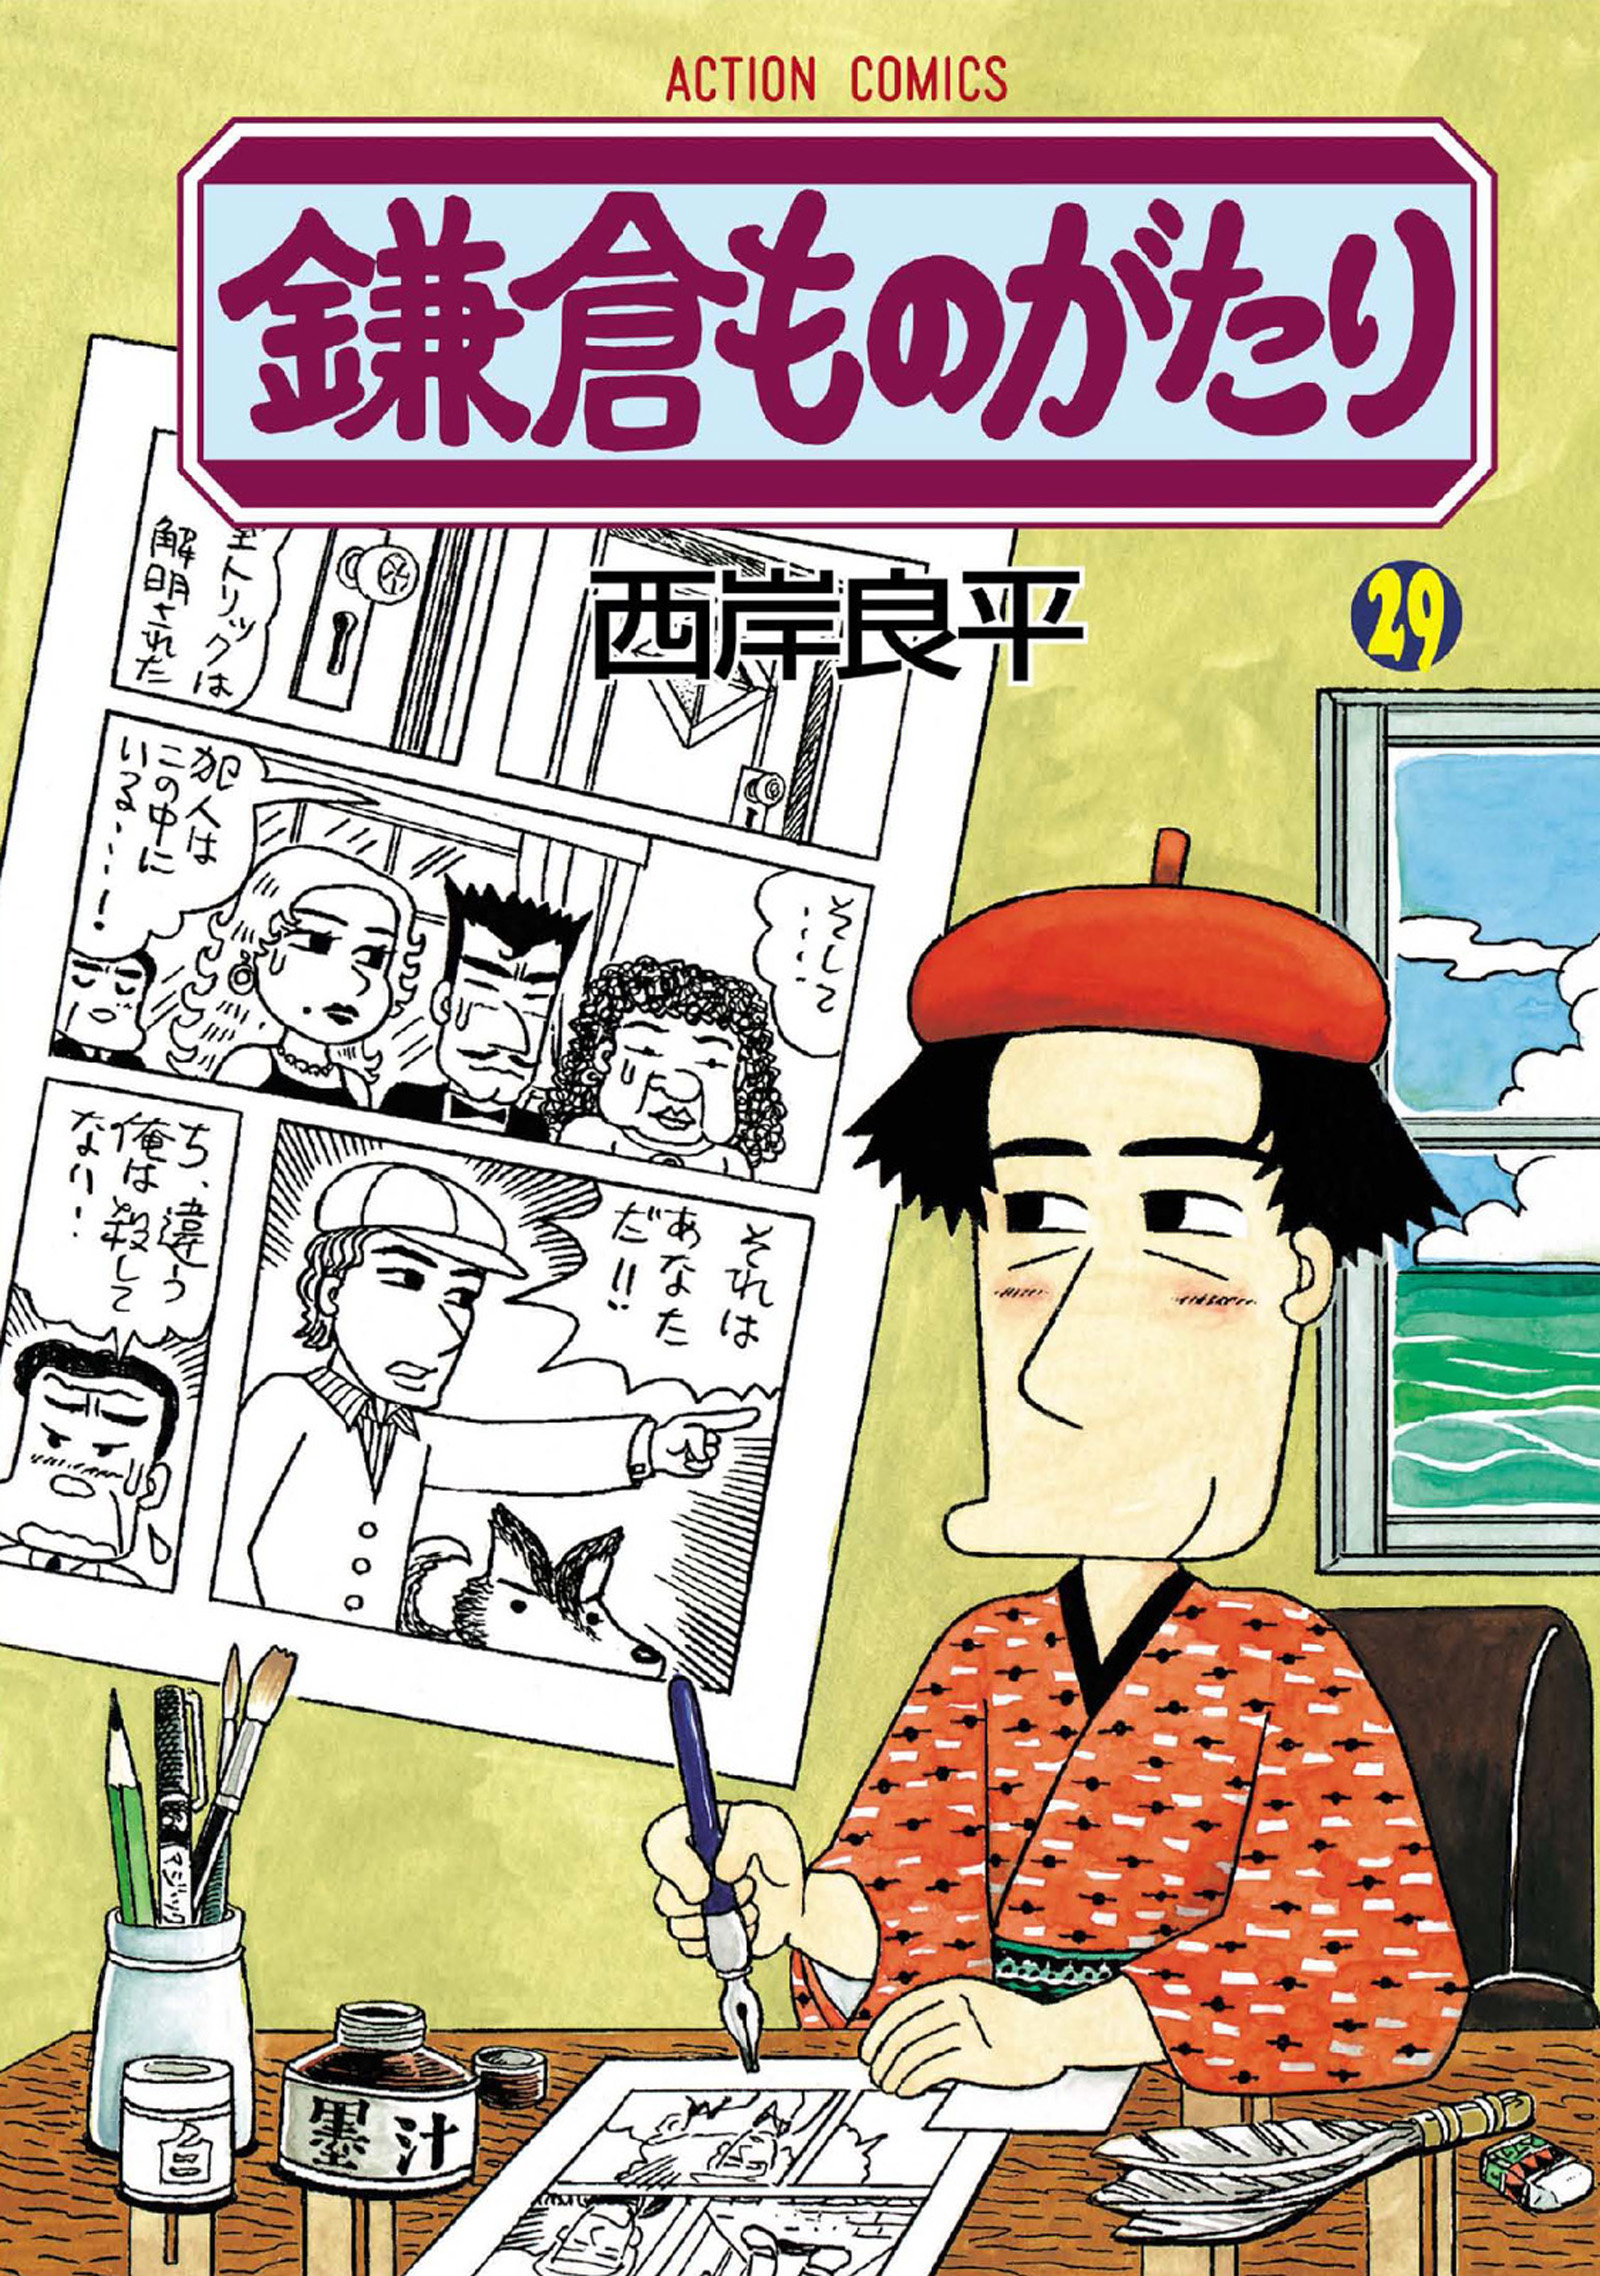 鎌倉ものがたり 西岸良平 1〜26巻 漫画 コミック - 漫画、コミック